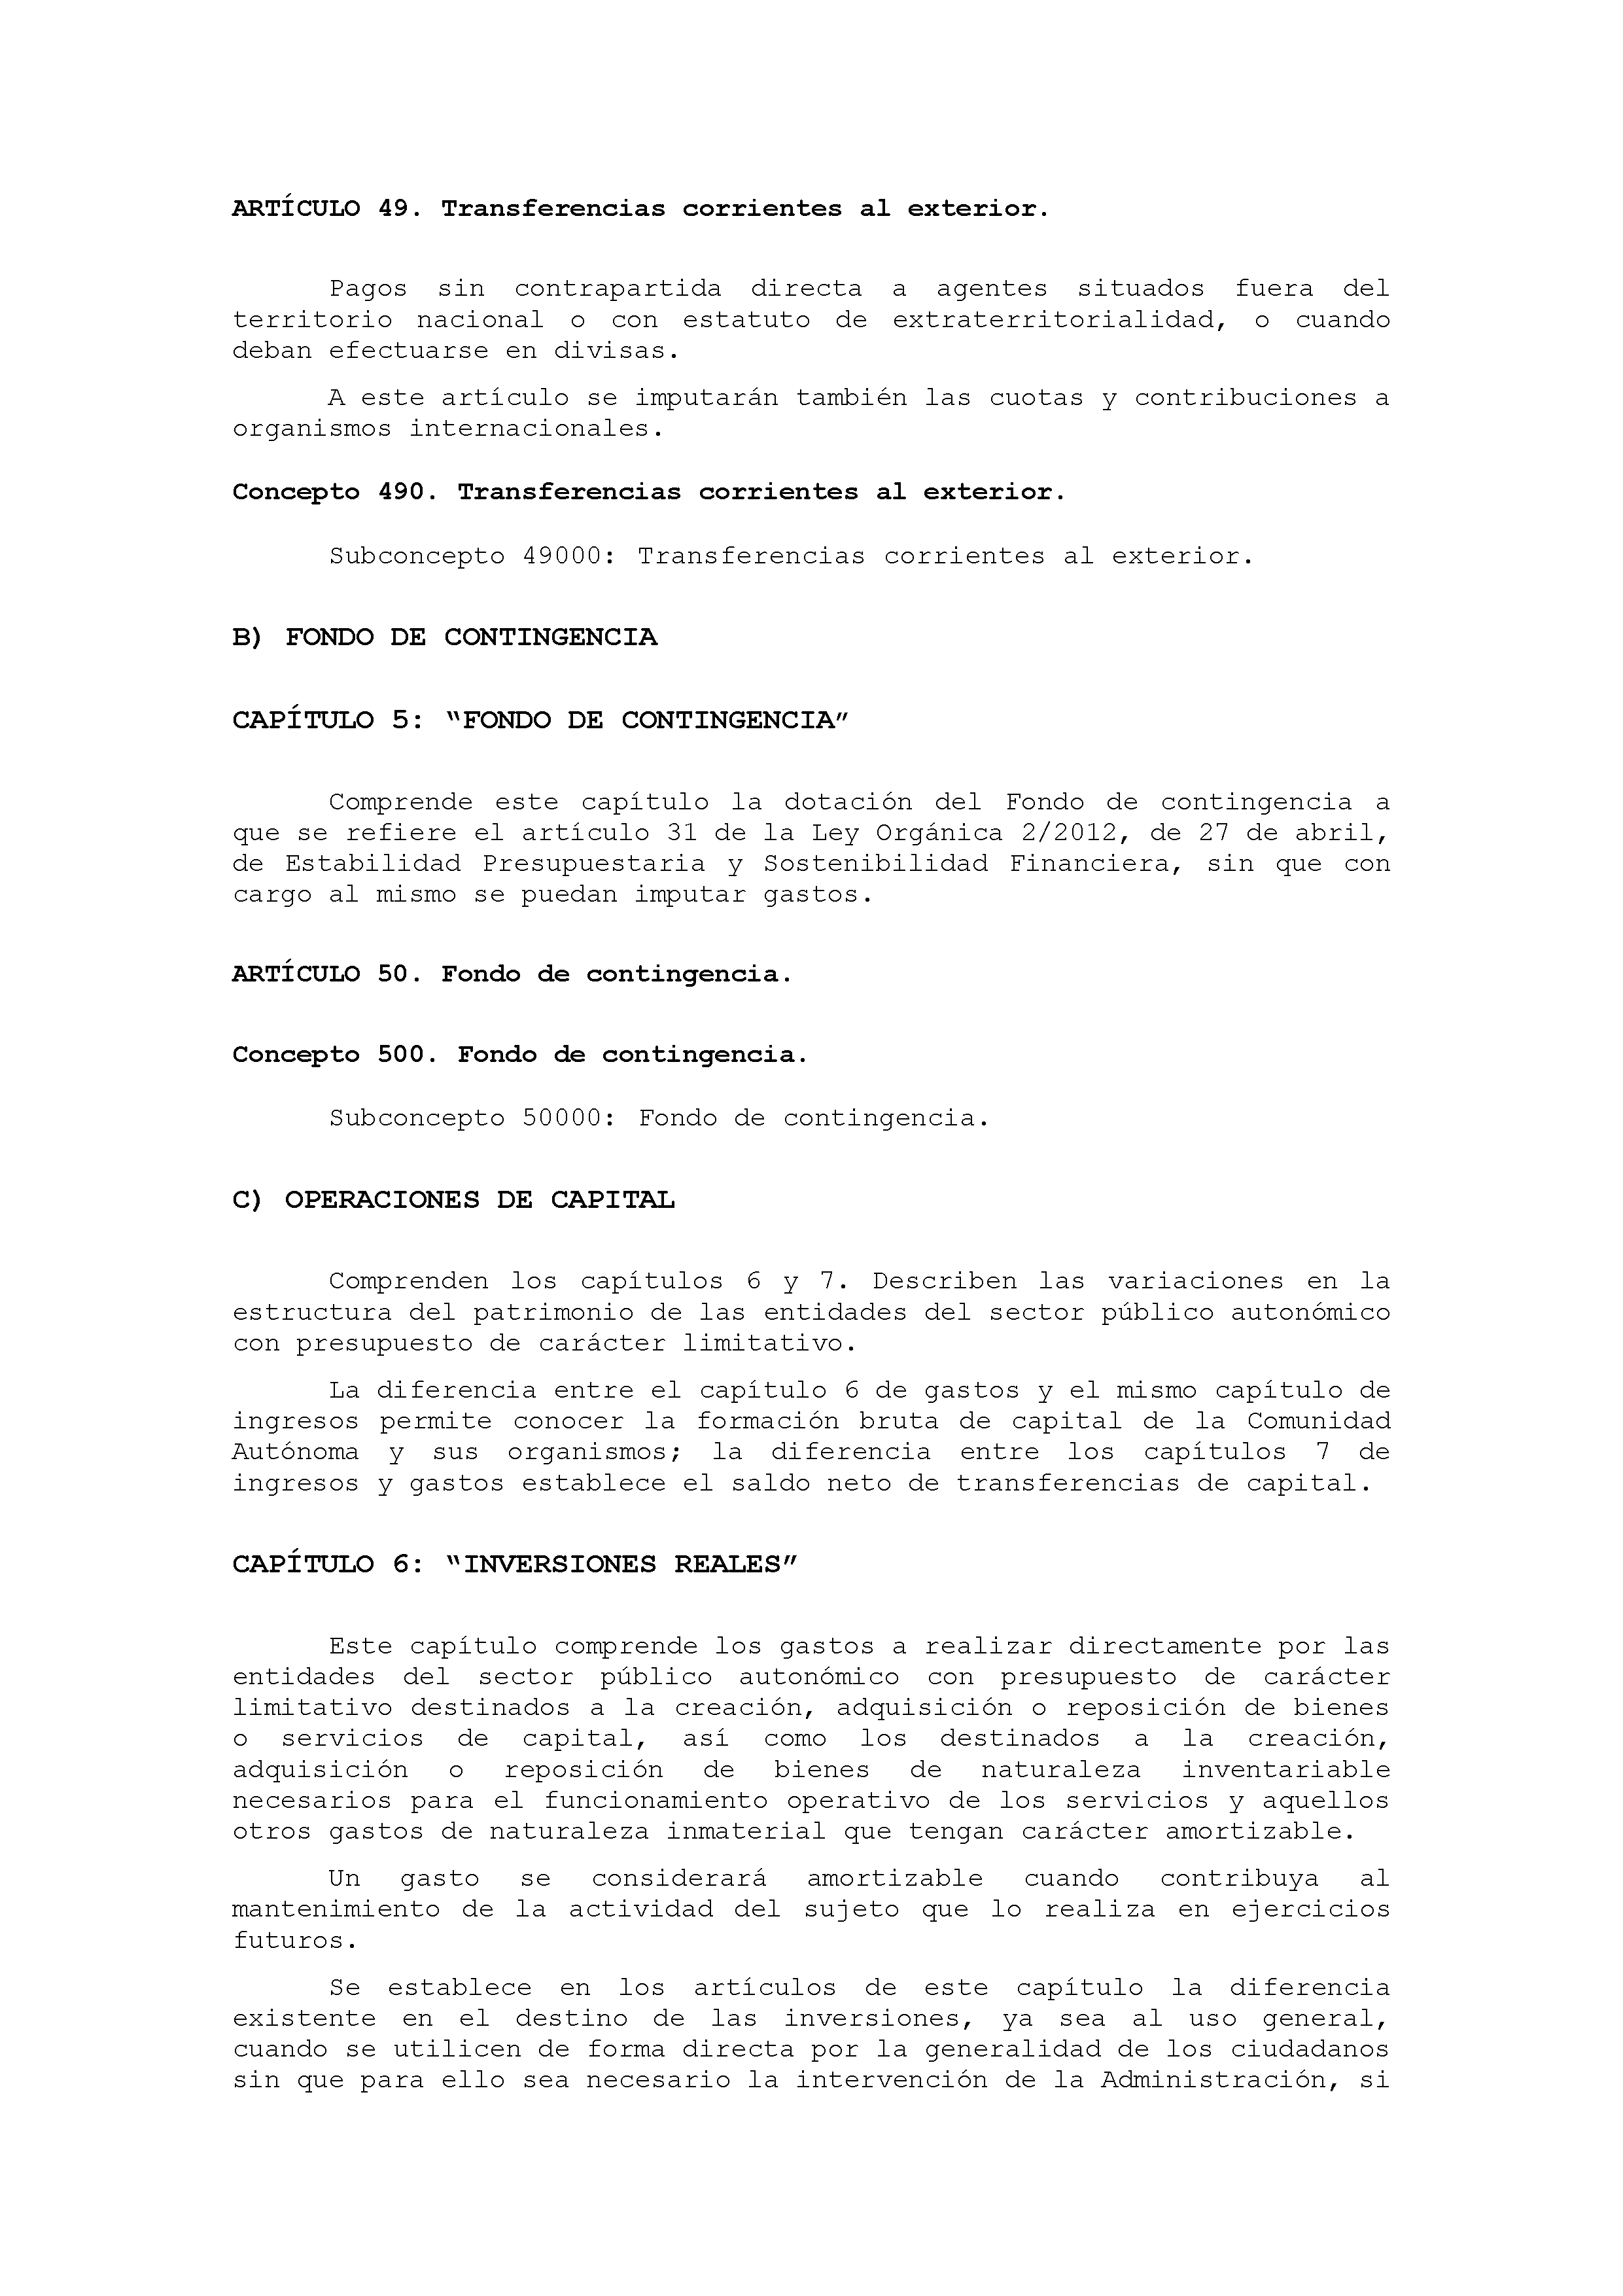 ANEXO IX CÓDIGO DE LA CLASIFICACIÓN ECONÓMICA DE LOS GASTOS PÚBLICOS Pag 34